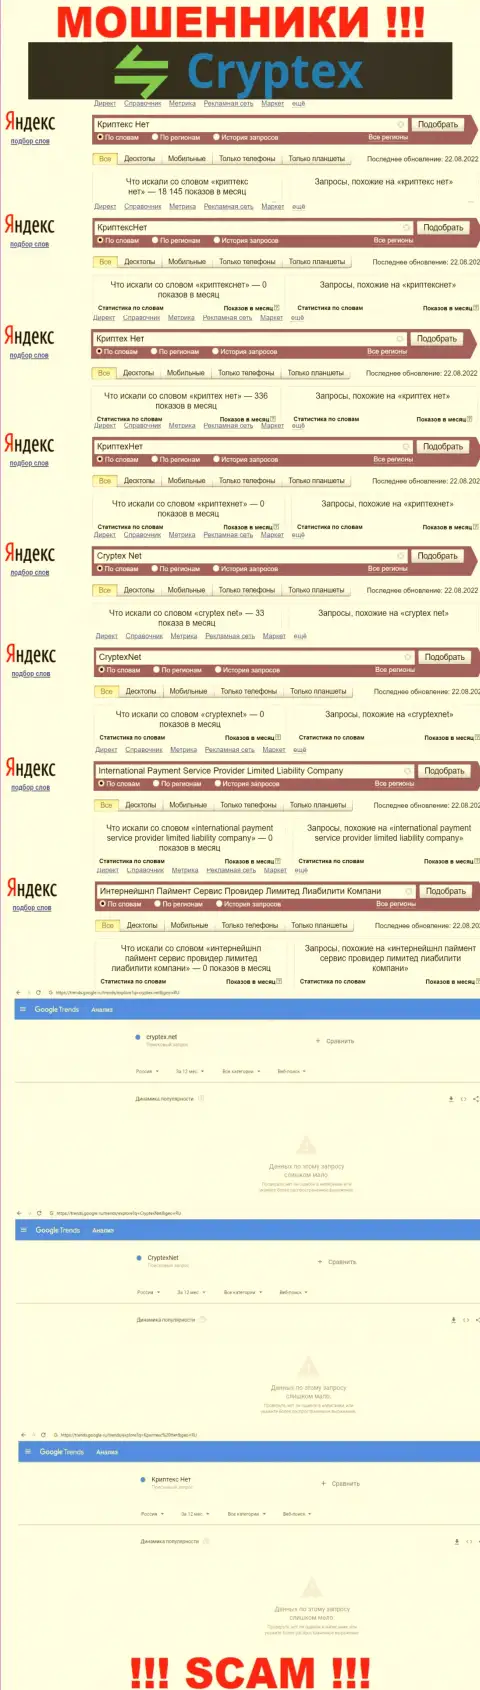 Скрин результата онлайн-запросов по противозаконно действующей компании Криптекс Нет